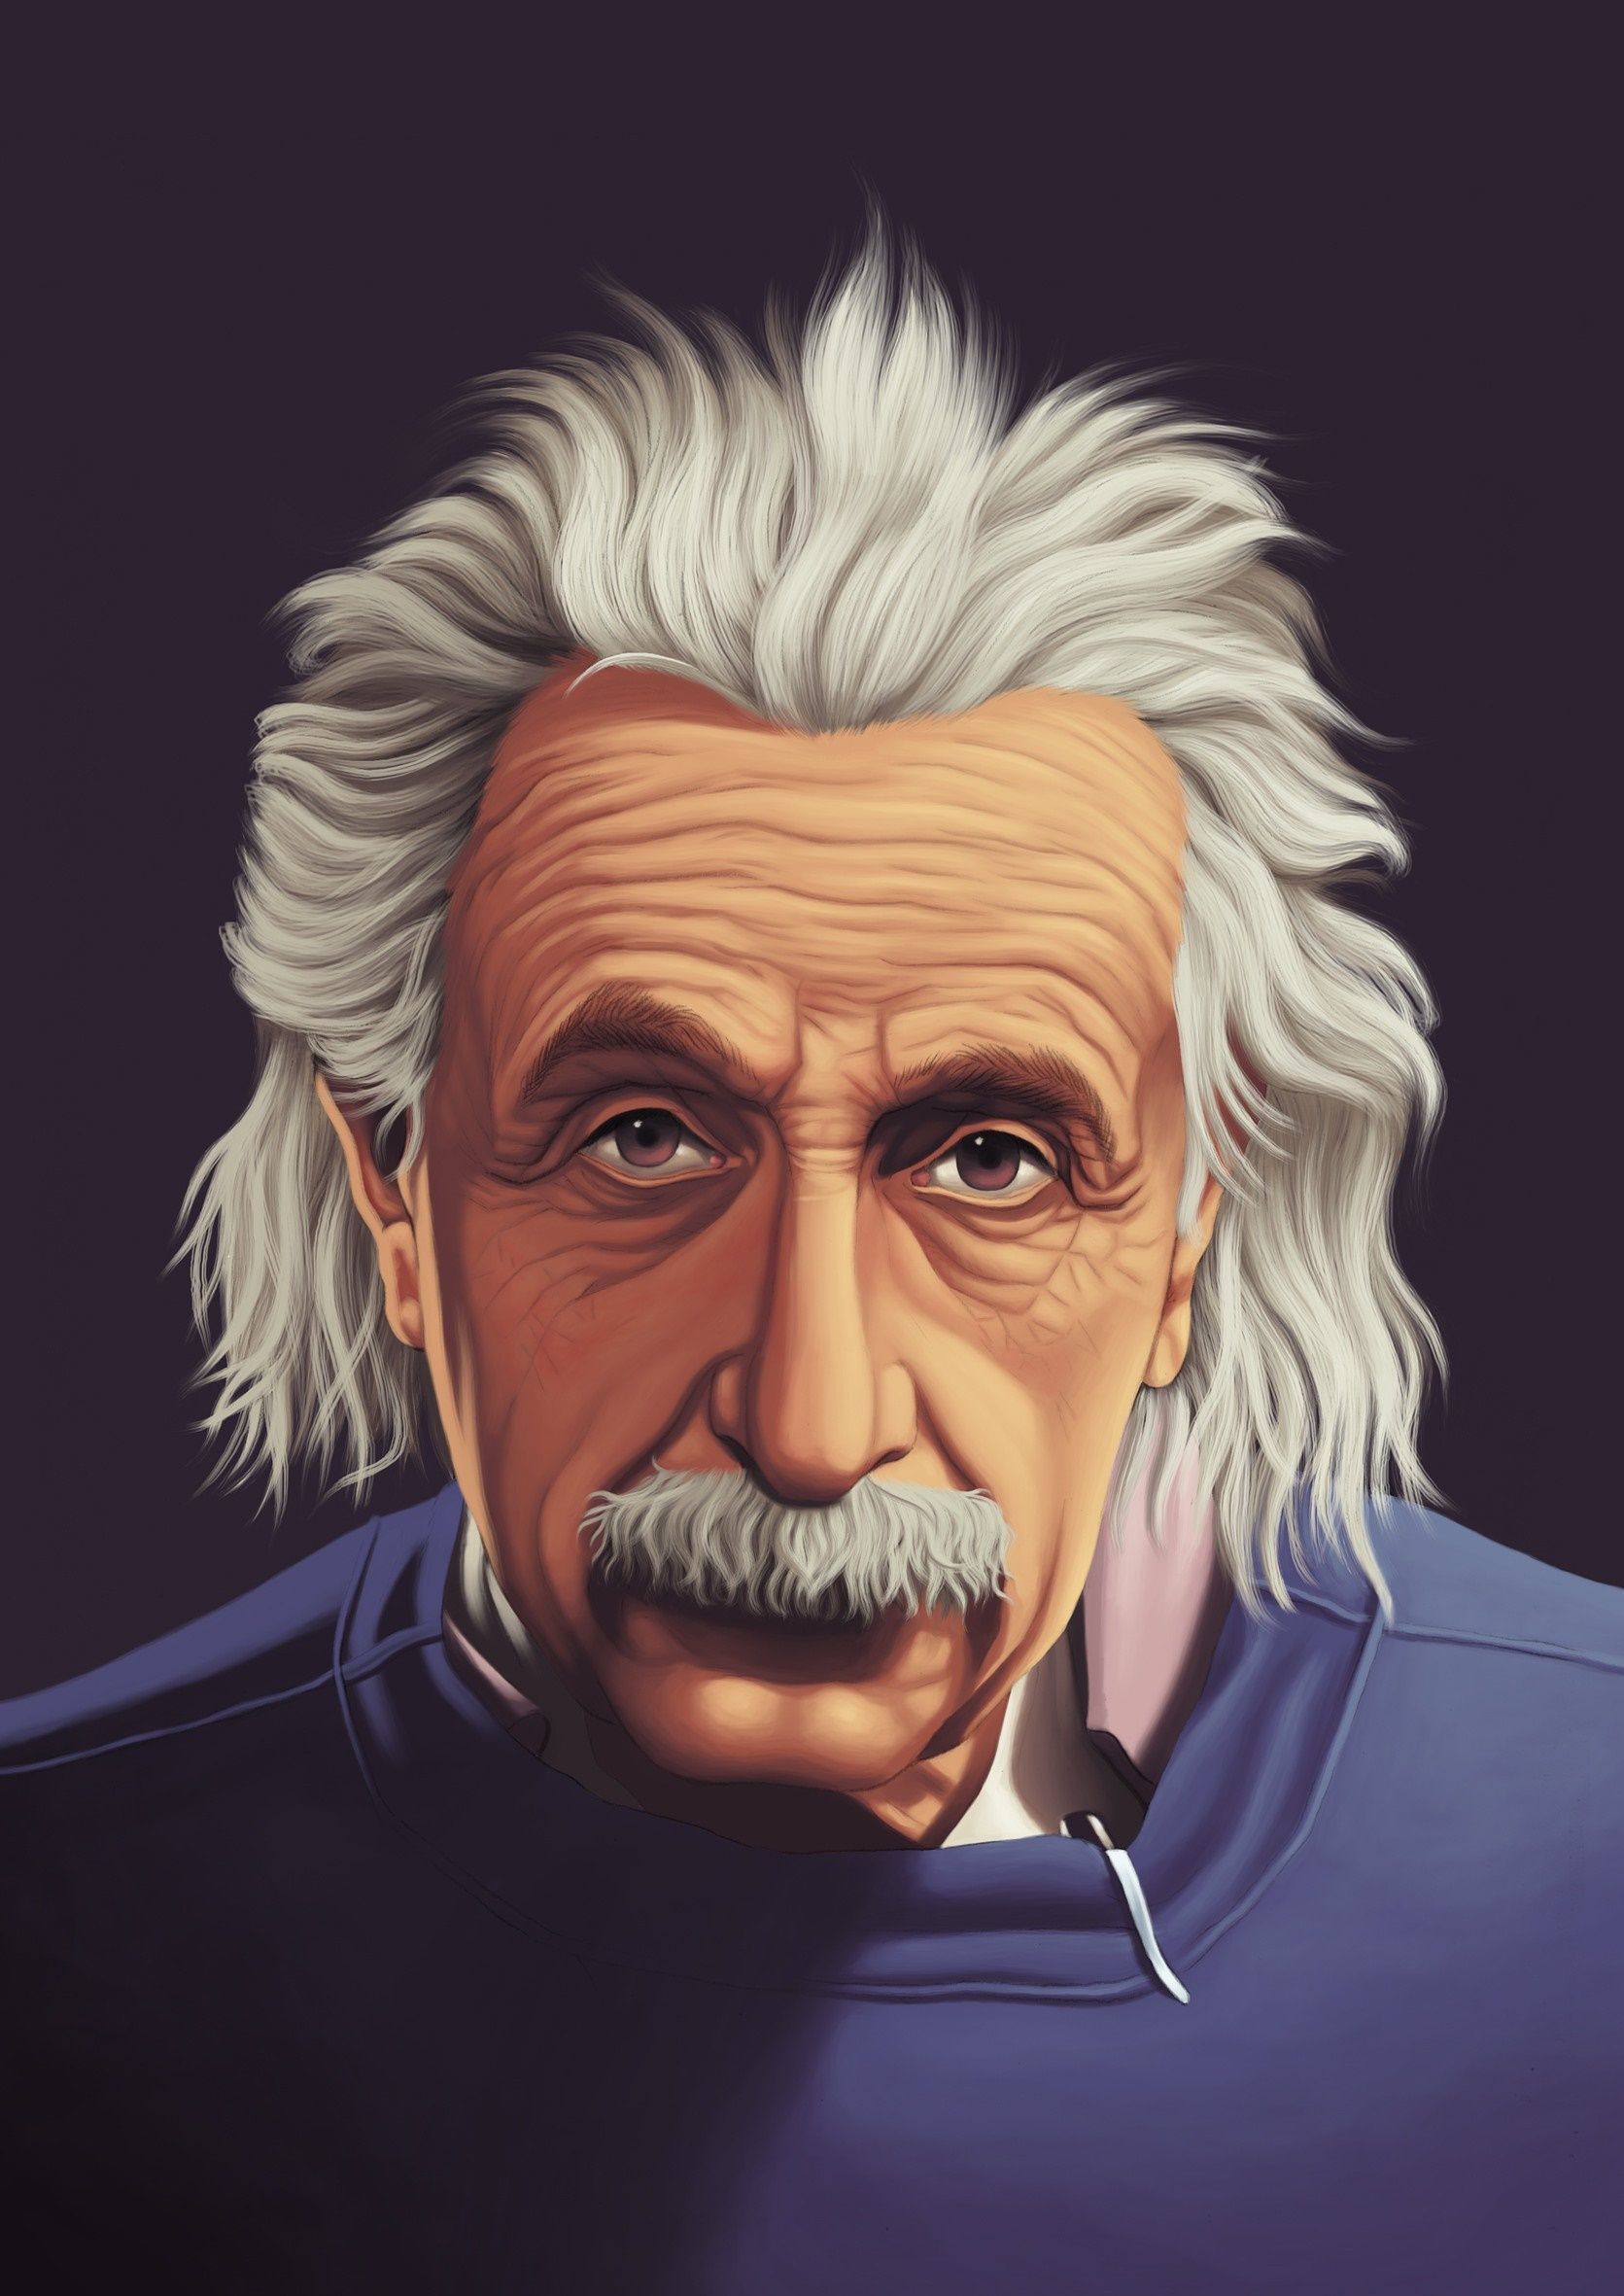  Albert Einstein Hintergrundbild 1671x2362. albert einstein 1080P, 2k, 4k HD wallpaper, background free download